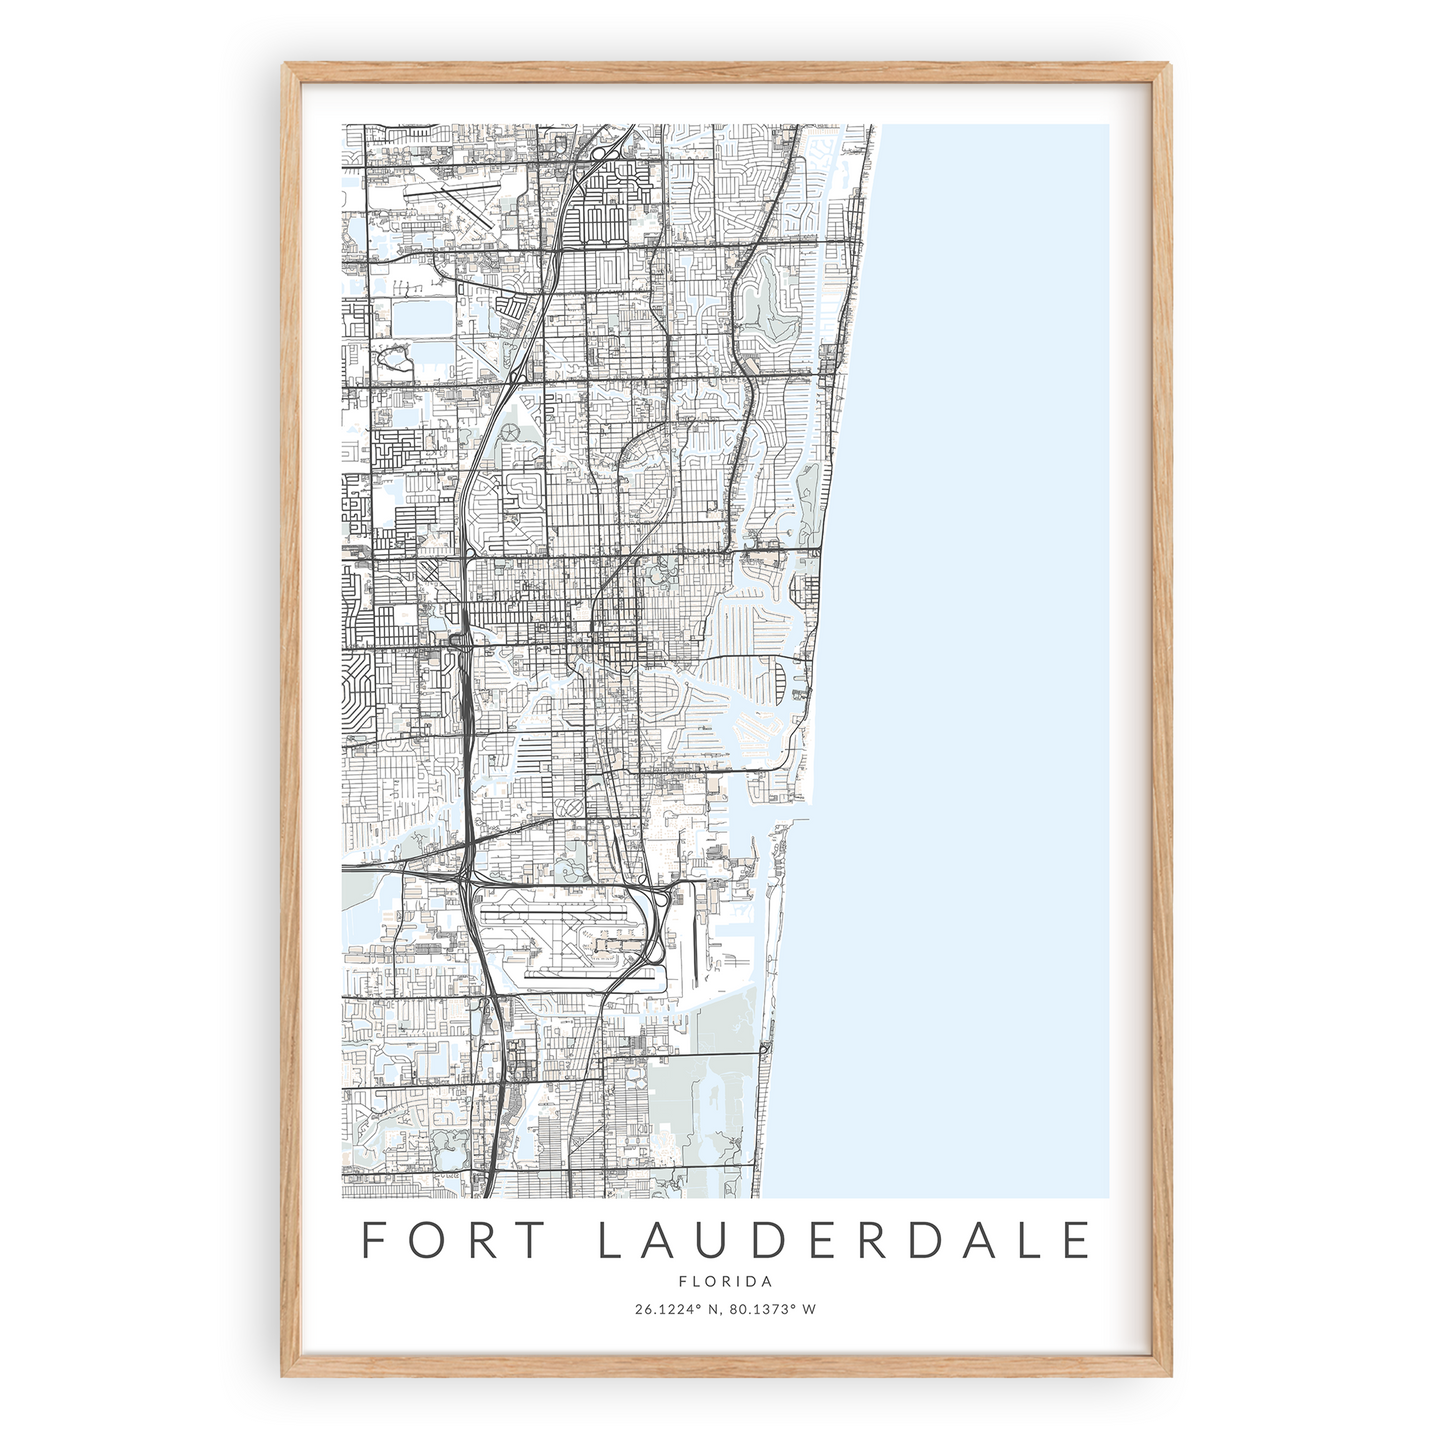 Fort Lauderdale Map Print